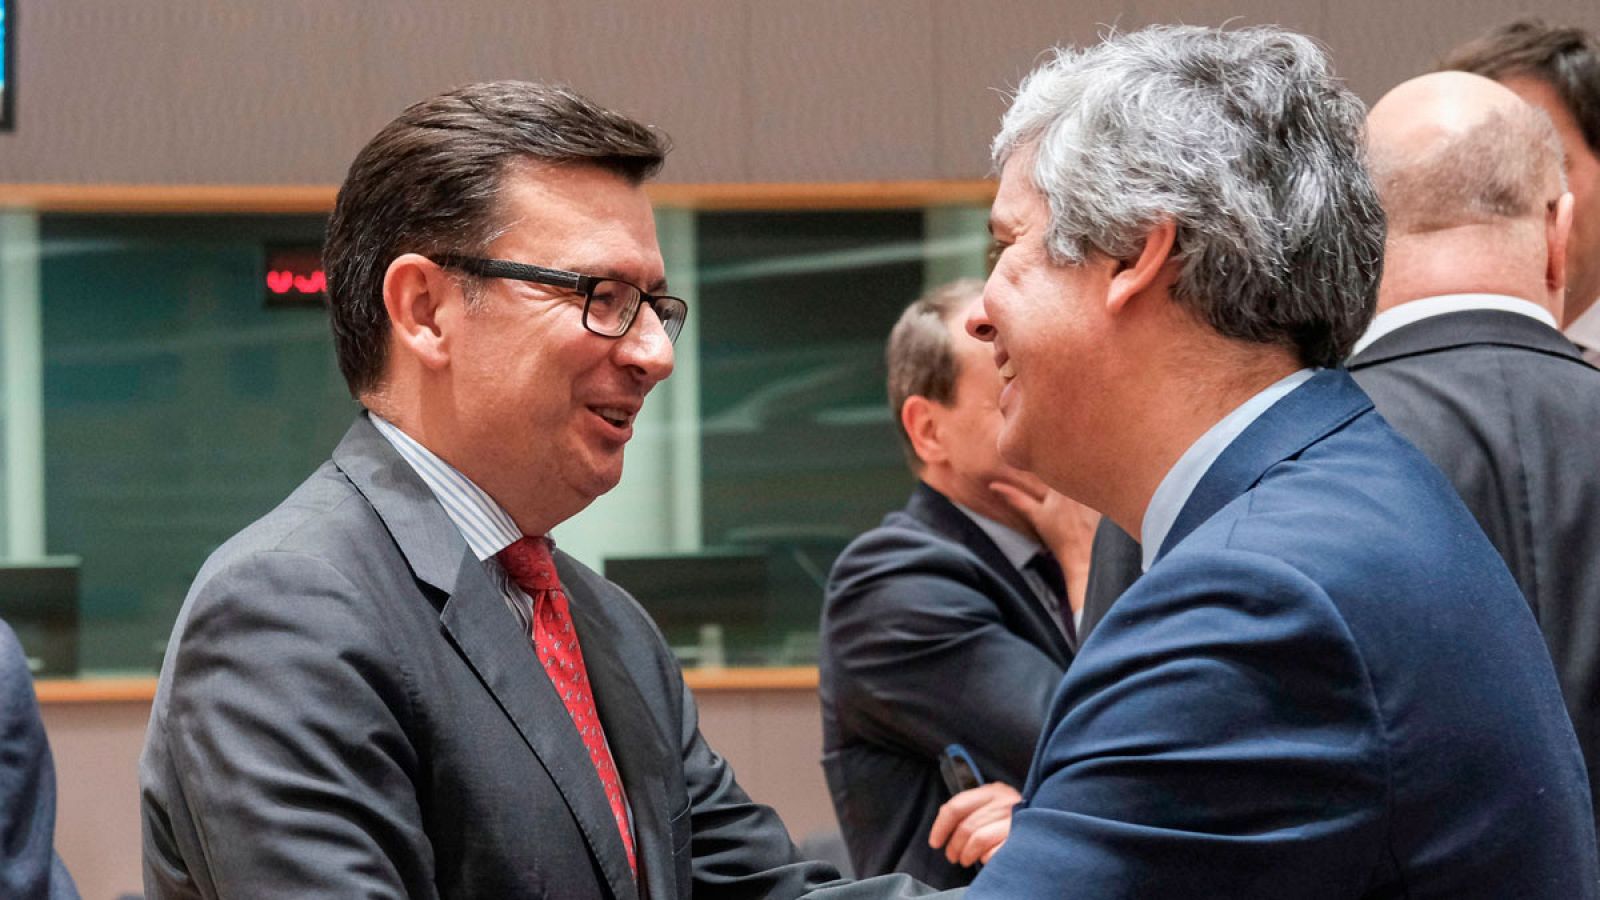 El ministro de Economía, Industria y Competitividad, Román Escolano, saluda al presidente del Eurogrupo y ministro de Finanzas portugués Mario Centeno